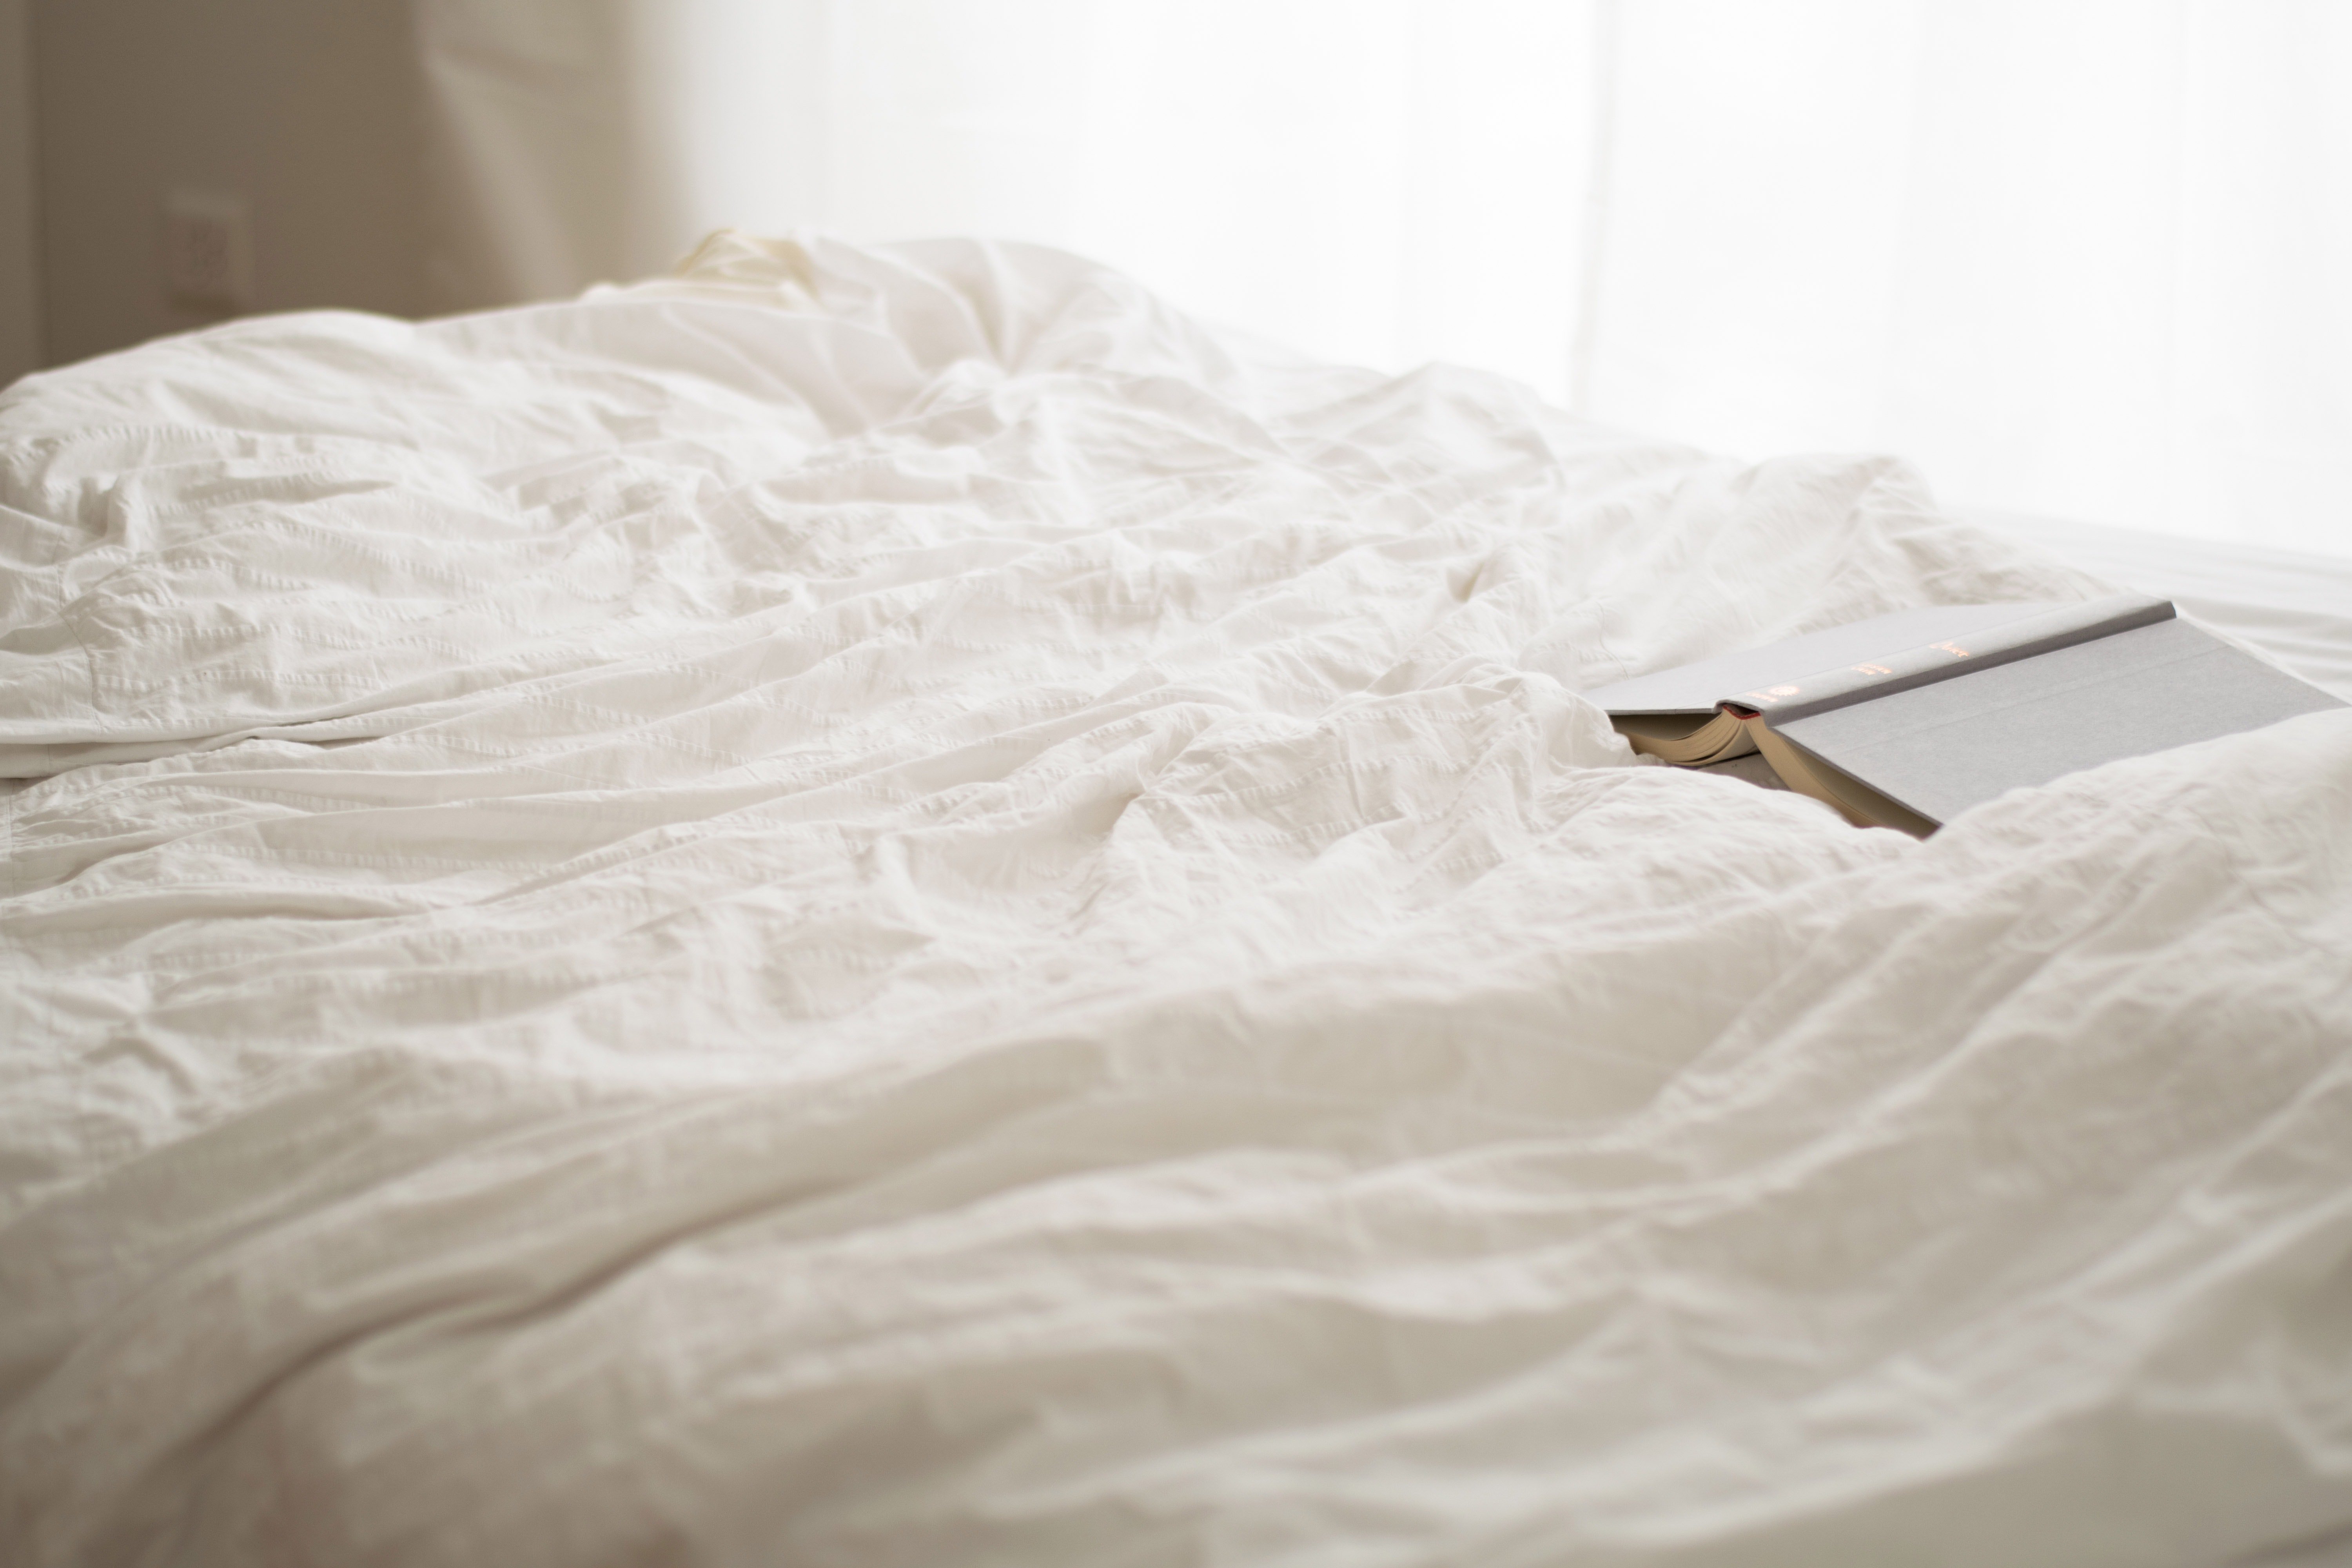 Nachdem er den Roman auf seinem Bett gefunden hatte, hatte Karl eine Idee im Kopf. | Quelle: Pexels